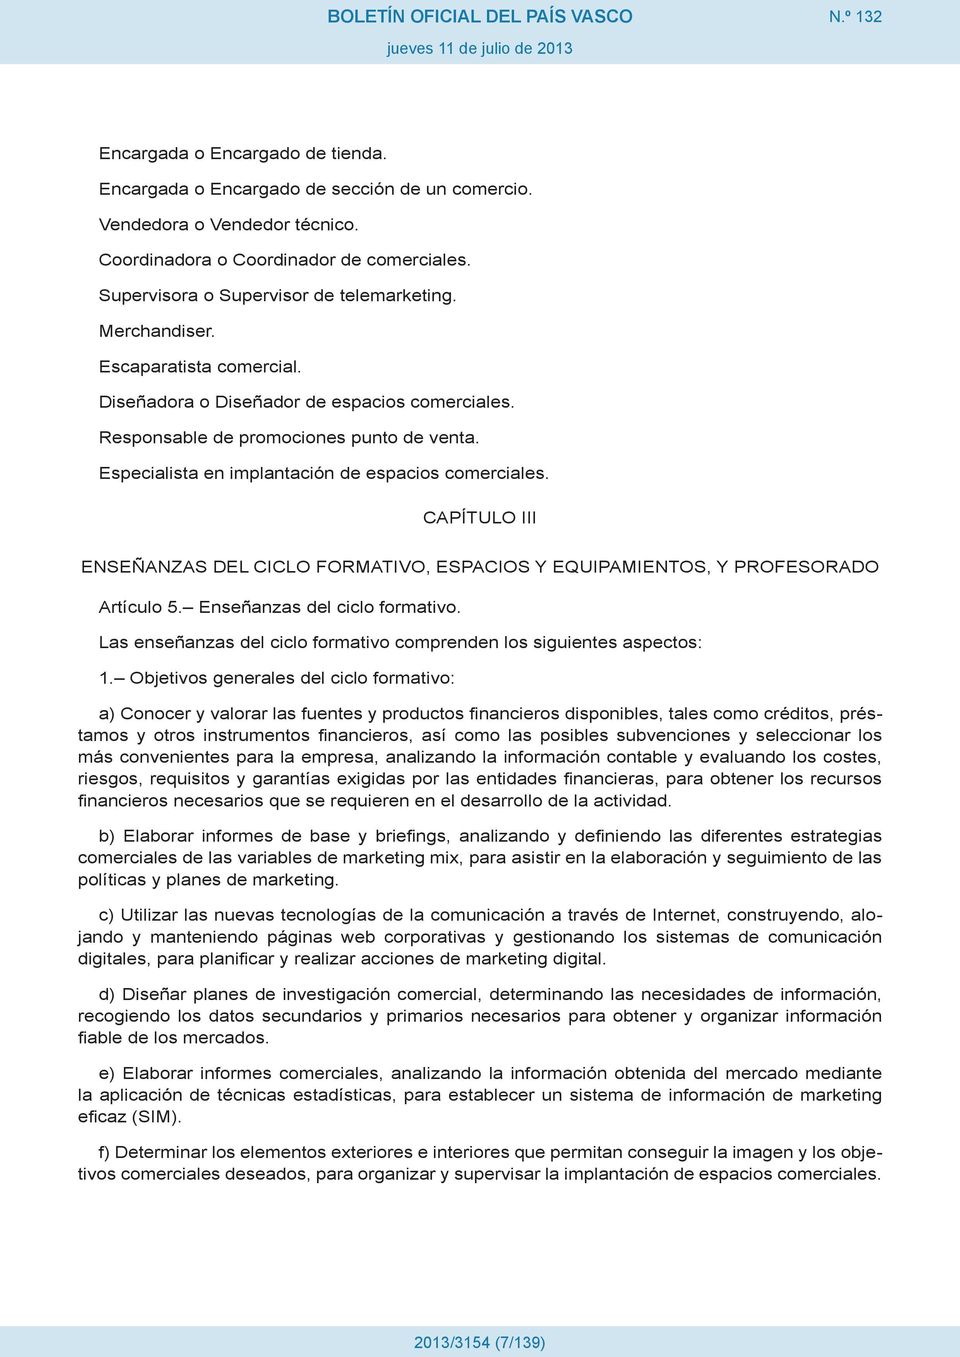 CAPÍTULO III ENSEÑANZAS DEL CICLO FORMATIVO, ESPACIOS Y EQUIPAMIENTOS, Y PROFESORADO Artículo 5. Enseñanzas del ciclo formativo.